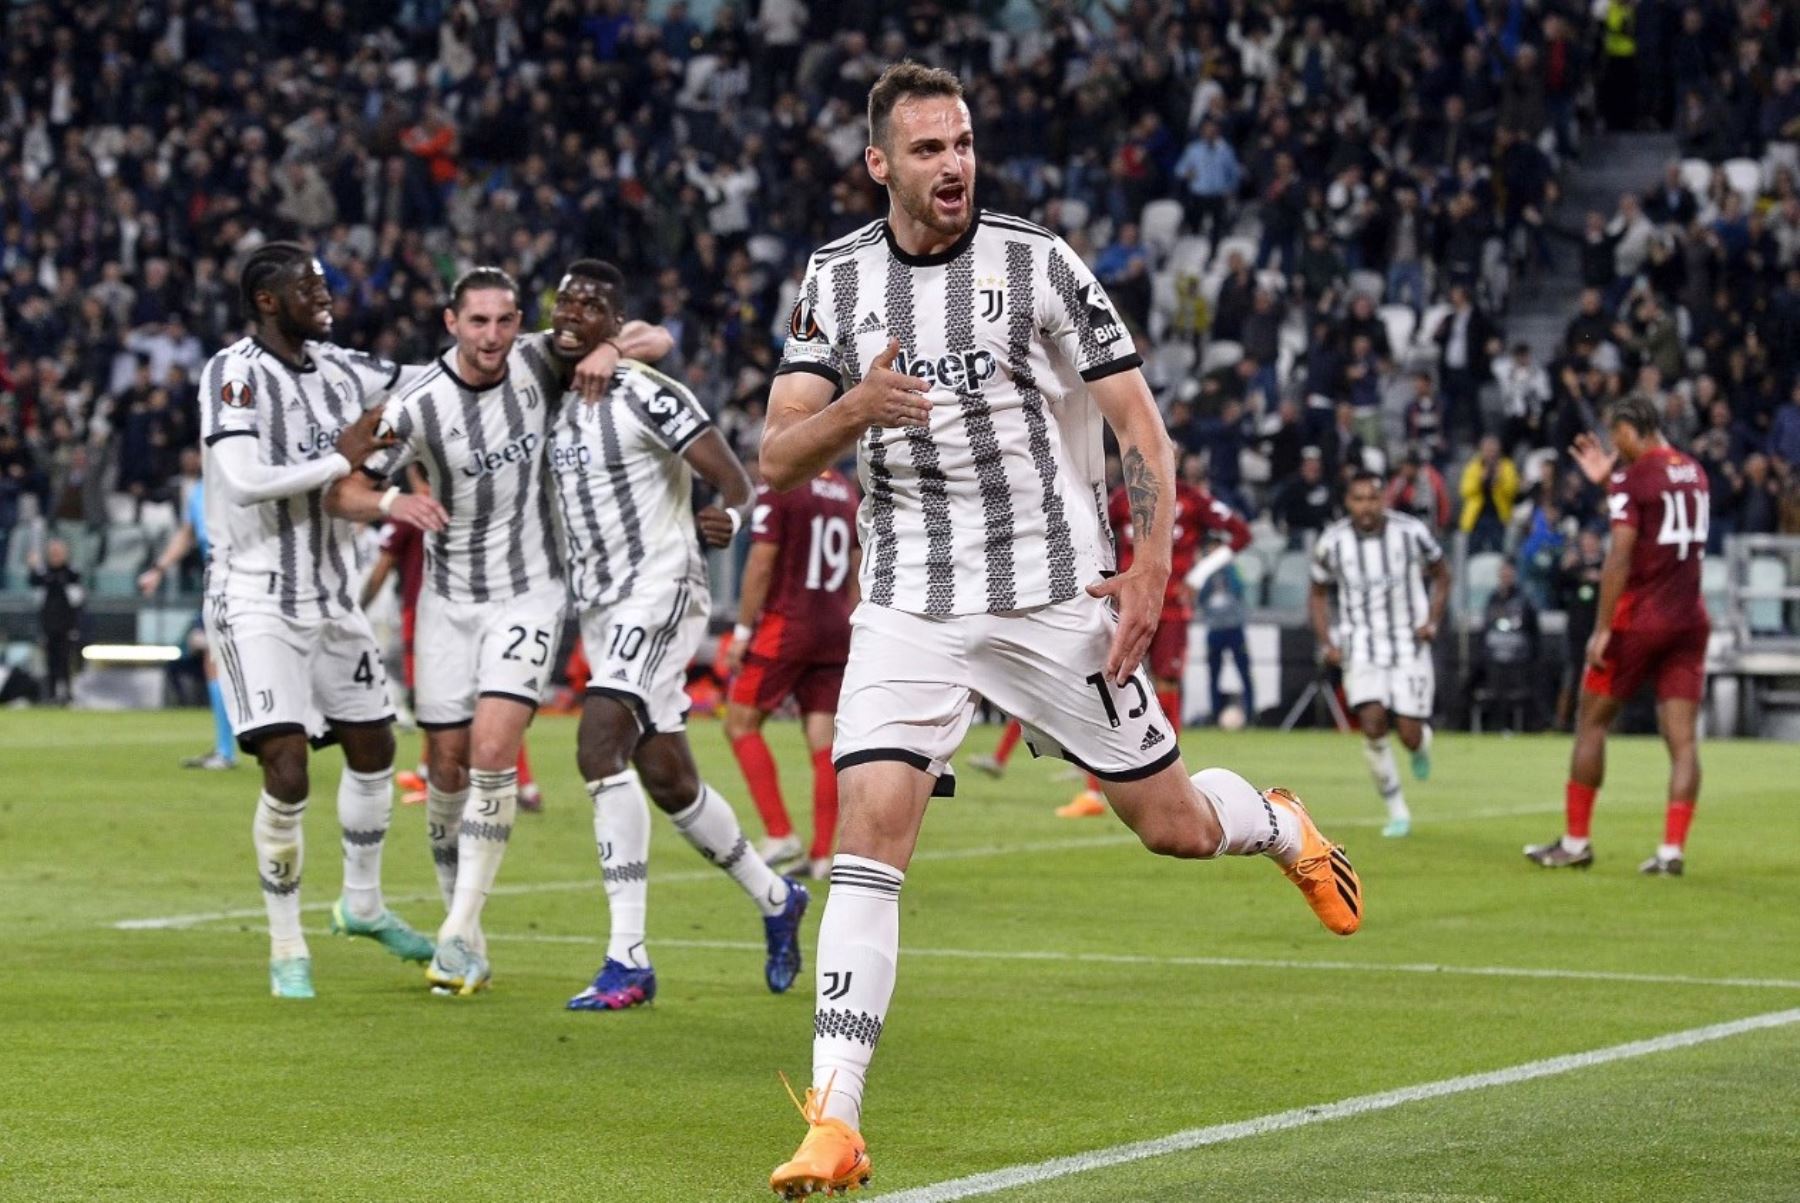 Jugadores del Juventus celebran el gol de Gatti en los descuentos del partido contra el Sevilla por la Liga Europea. Foto: Juventus FC/Twitter.